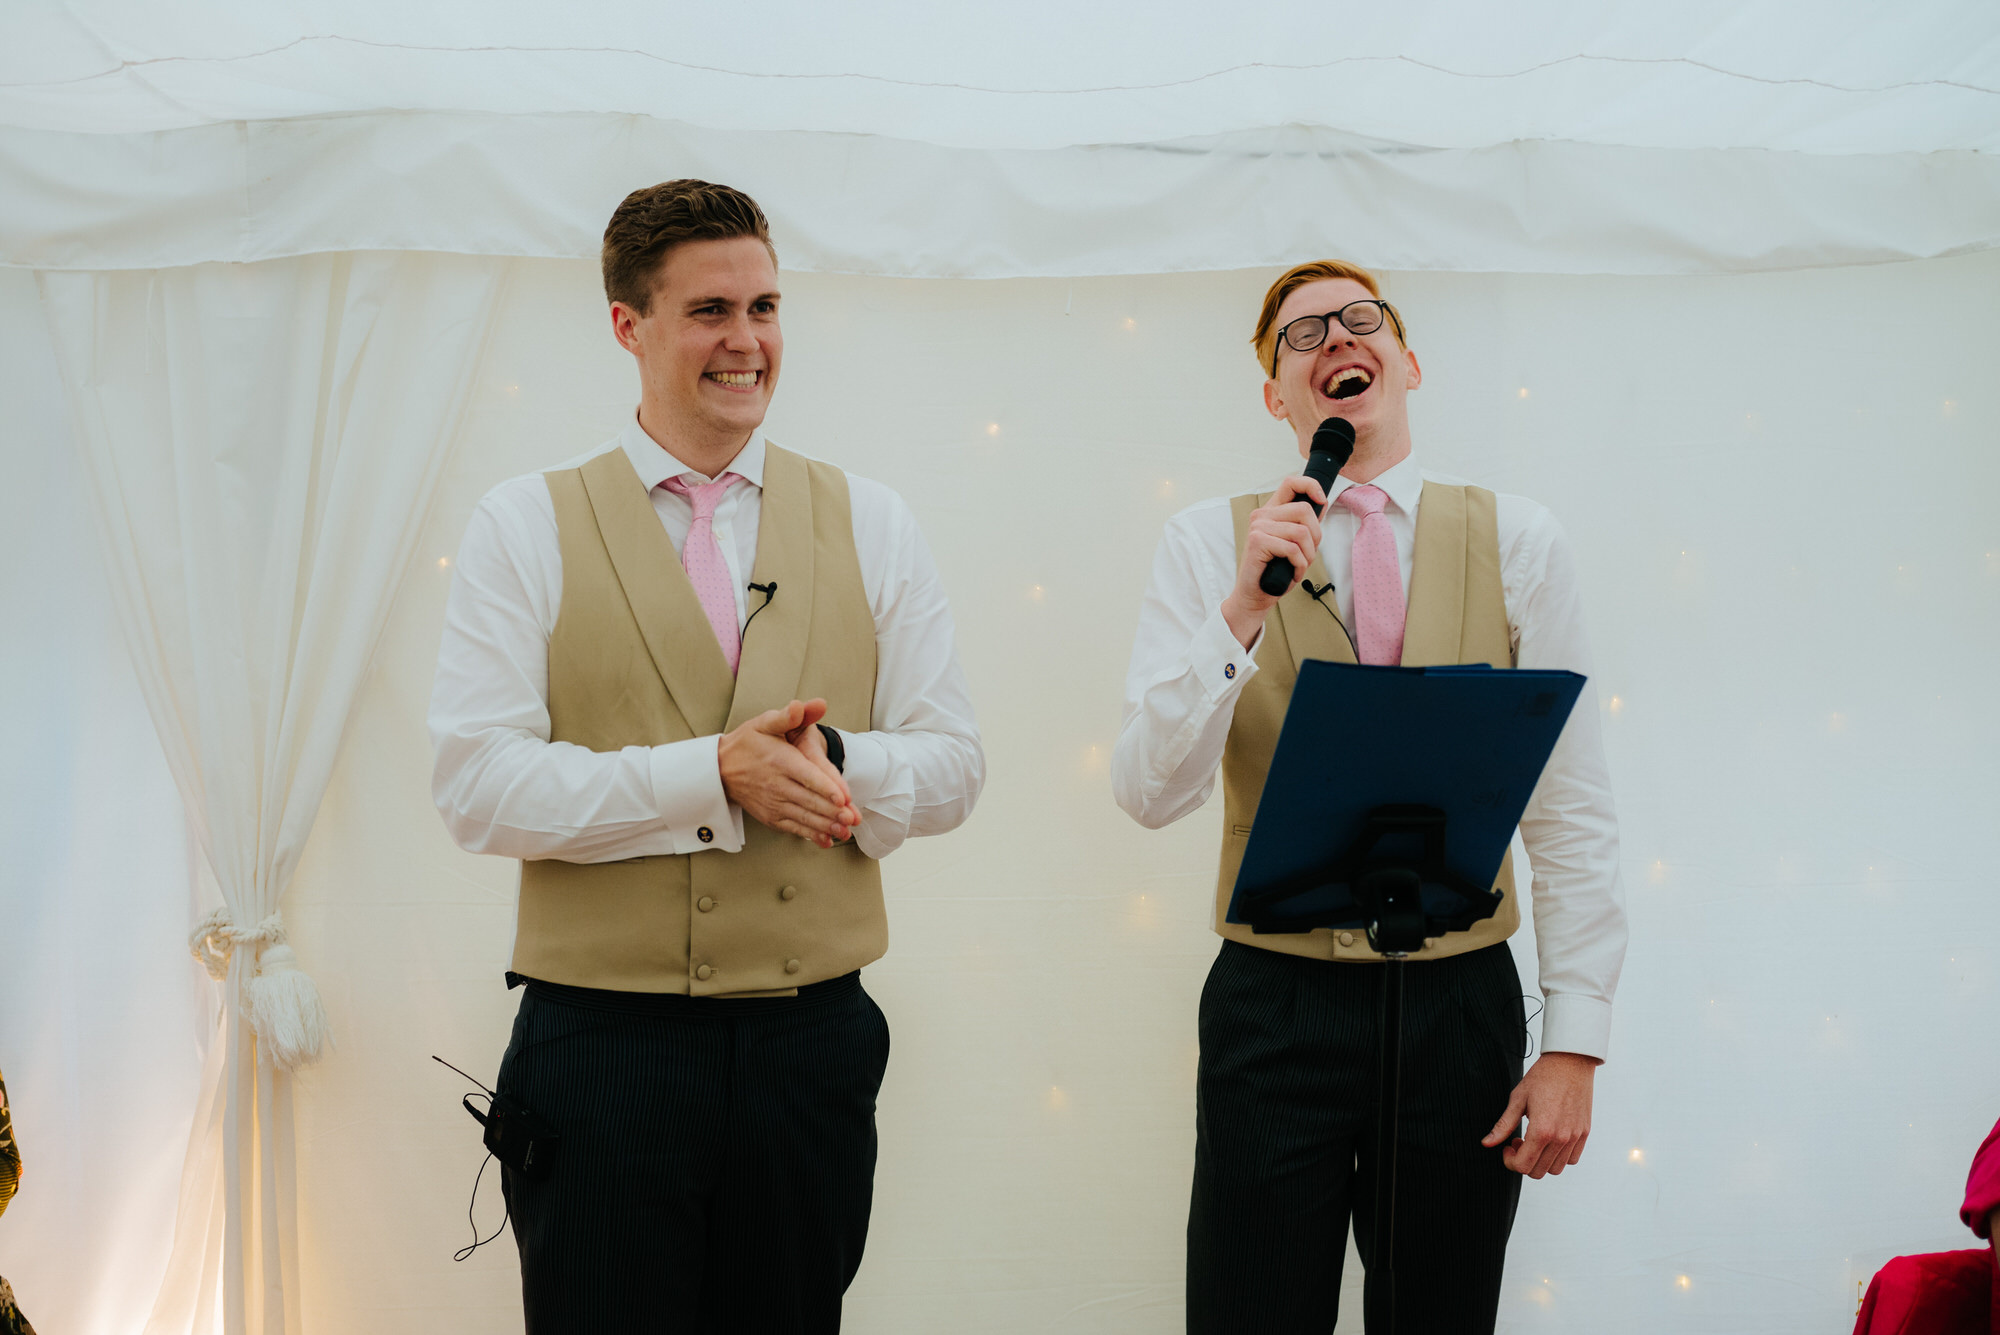 Best men wedding speeches